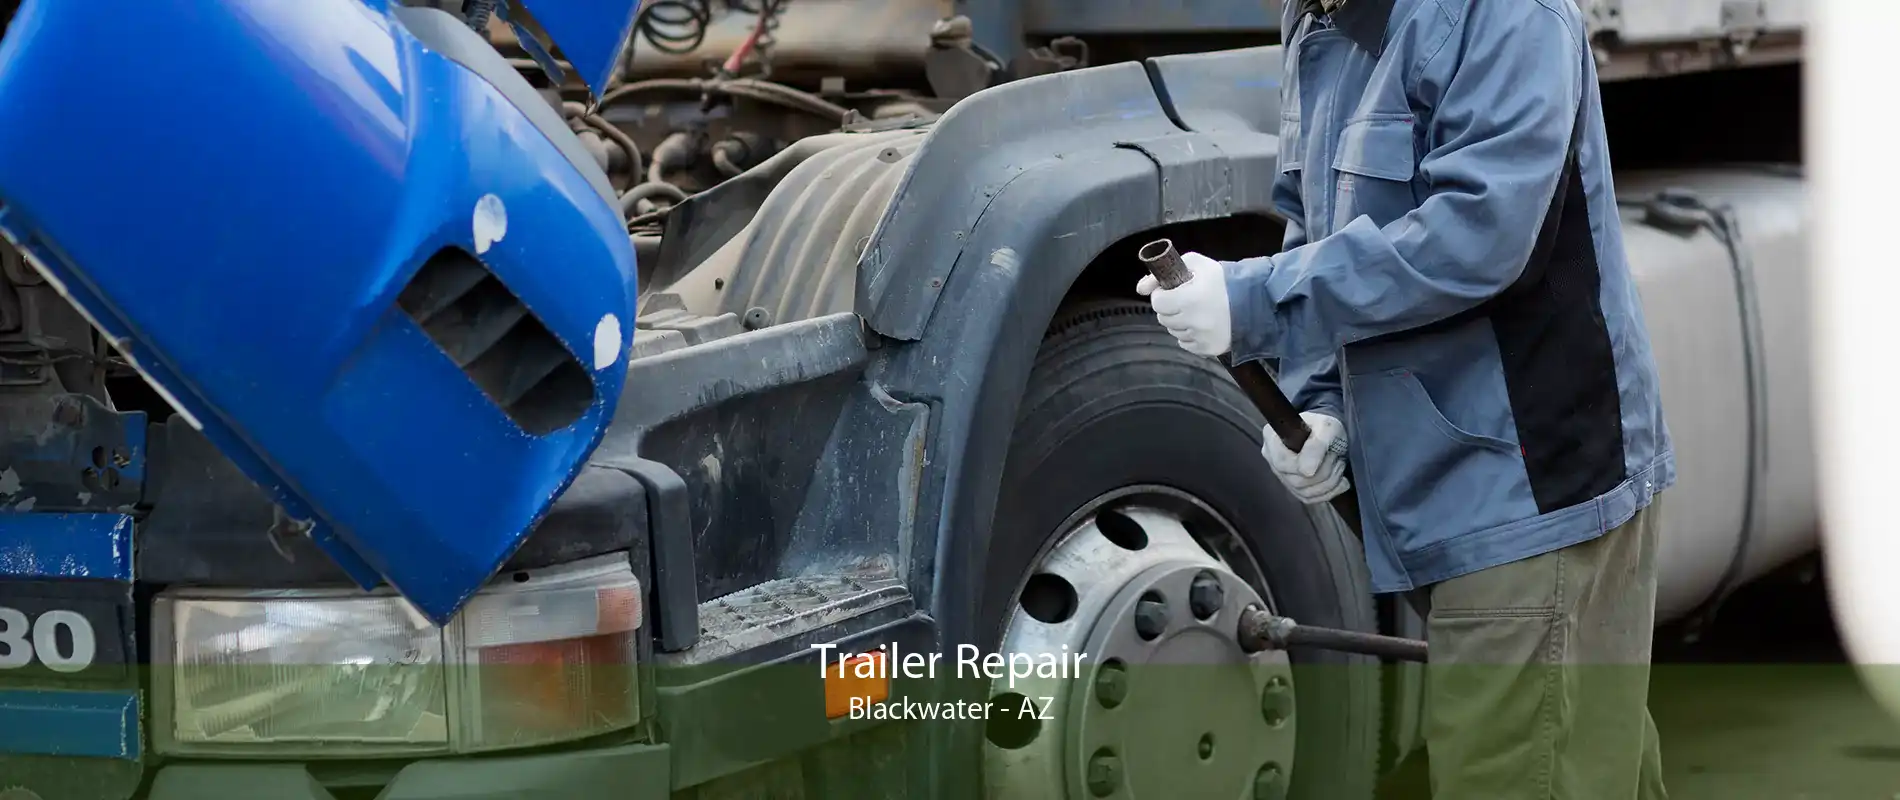 Trailer Repair Blackwater - AZ